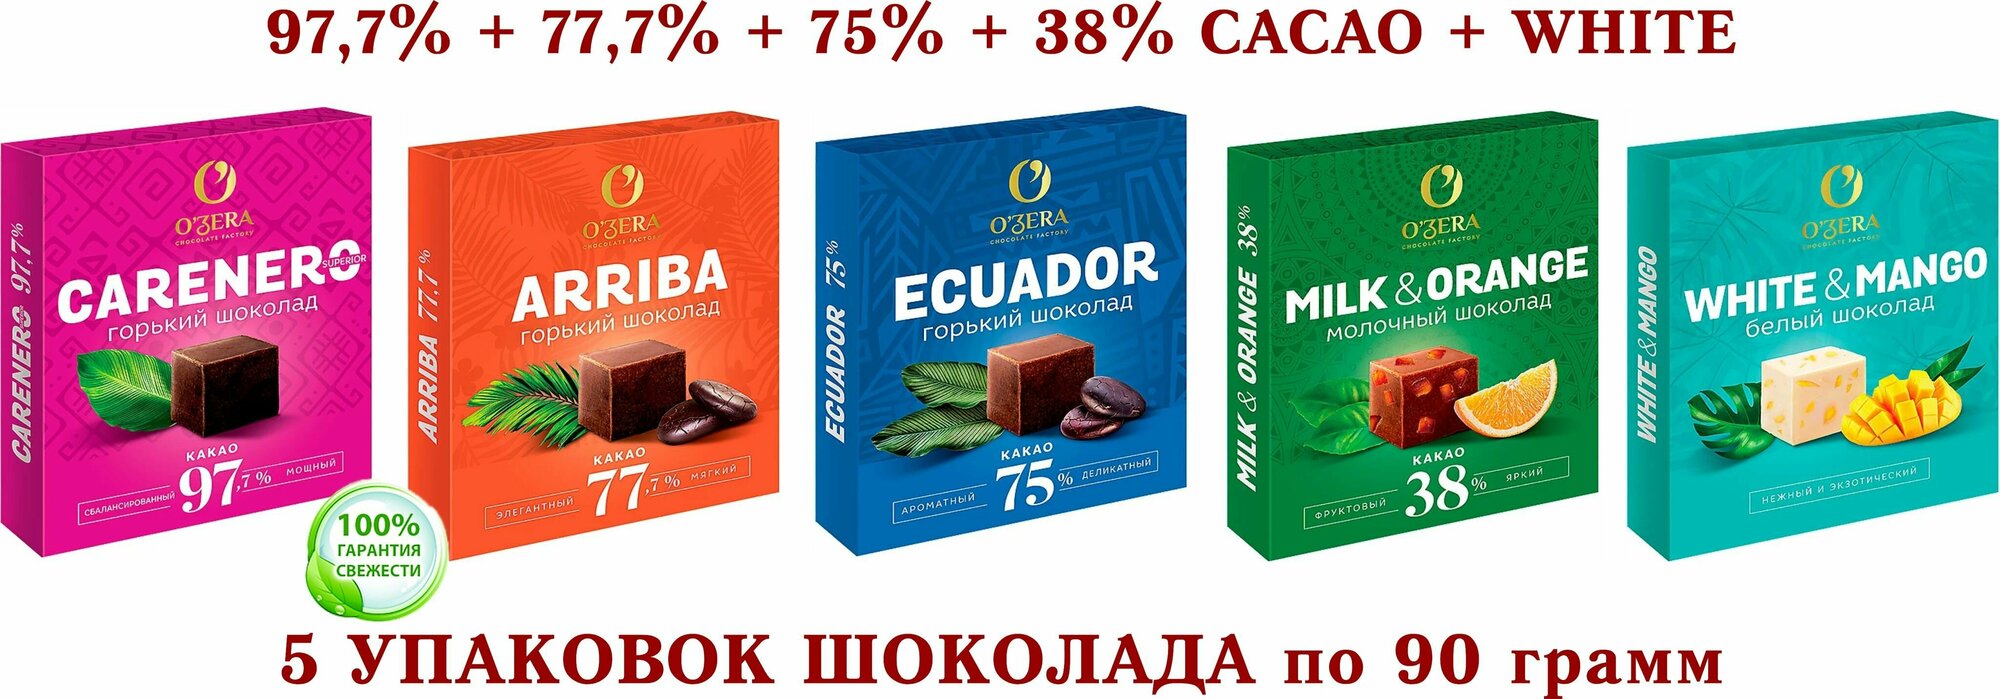 Шоколад OZera микс-Carenero SuperioR 97,7+ молочный с апельсином Milk&Orange 38%+ECUADOR 75%+Arriba-77,7%+белый с манго -KDV-5*90 гр.